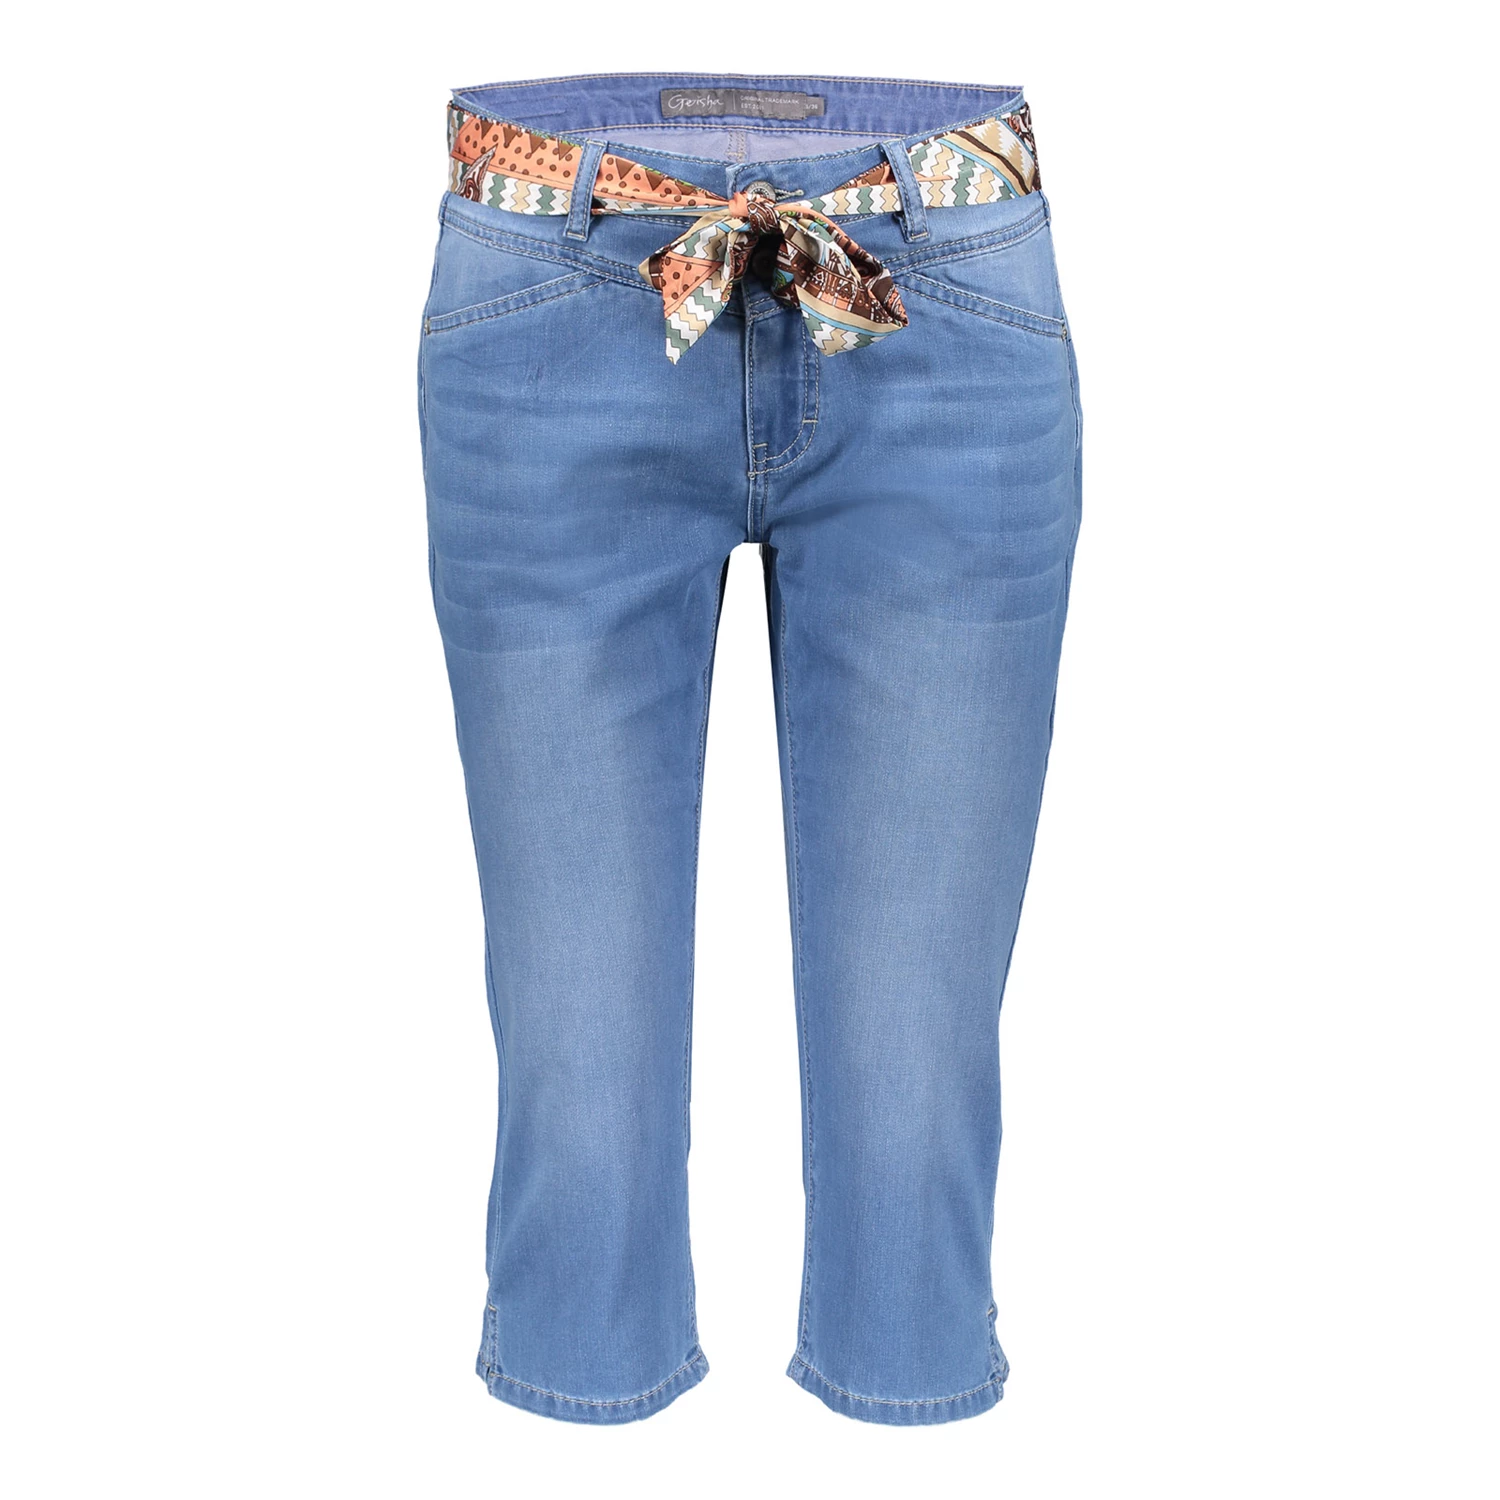 Aftrekken dichtheid Over instelling Geisha capri jeans belt 31308-10 online on geishafashion.eu